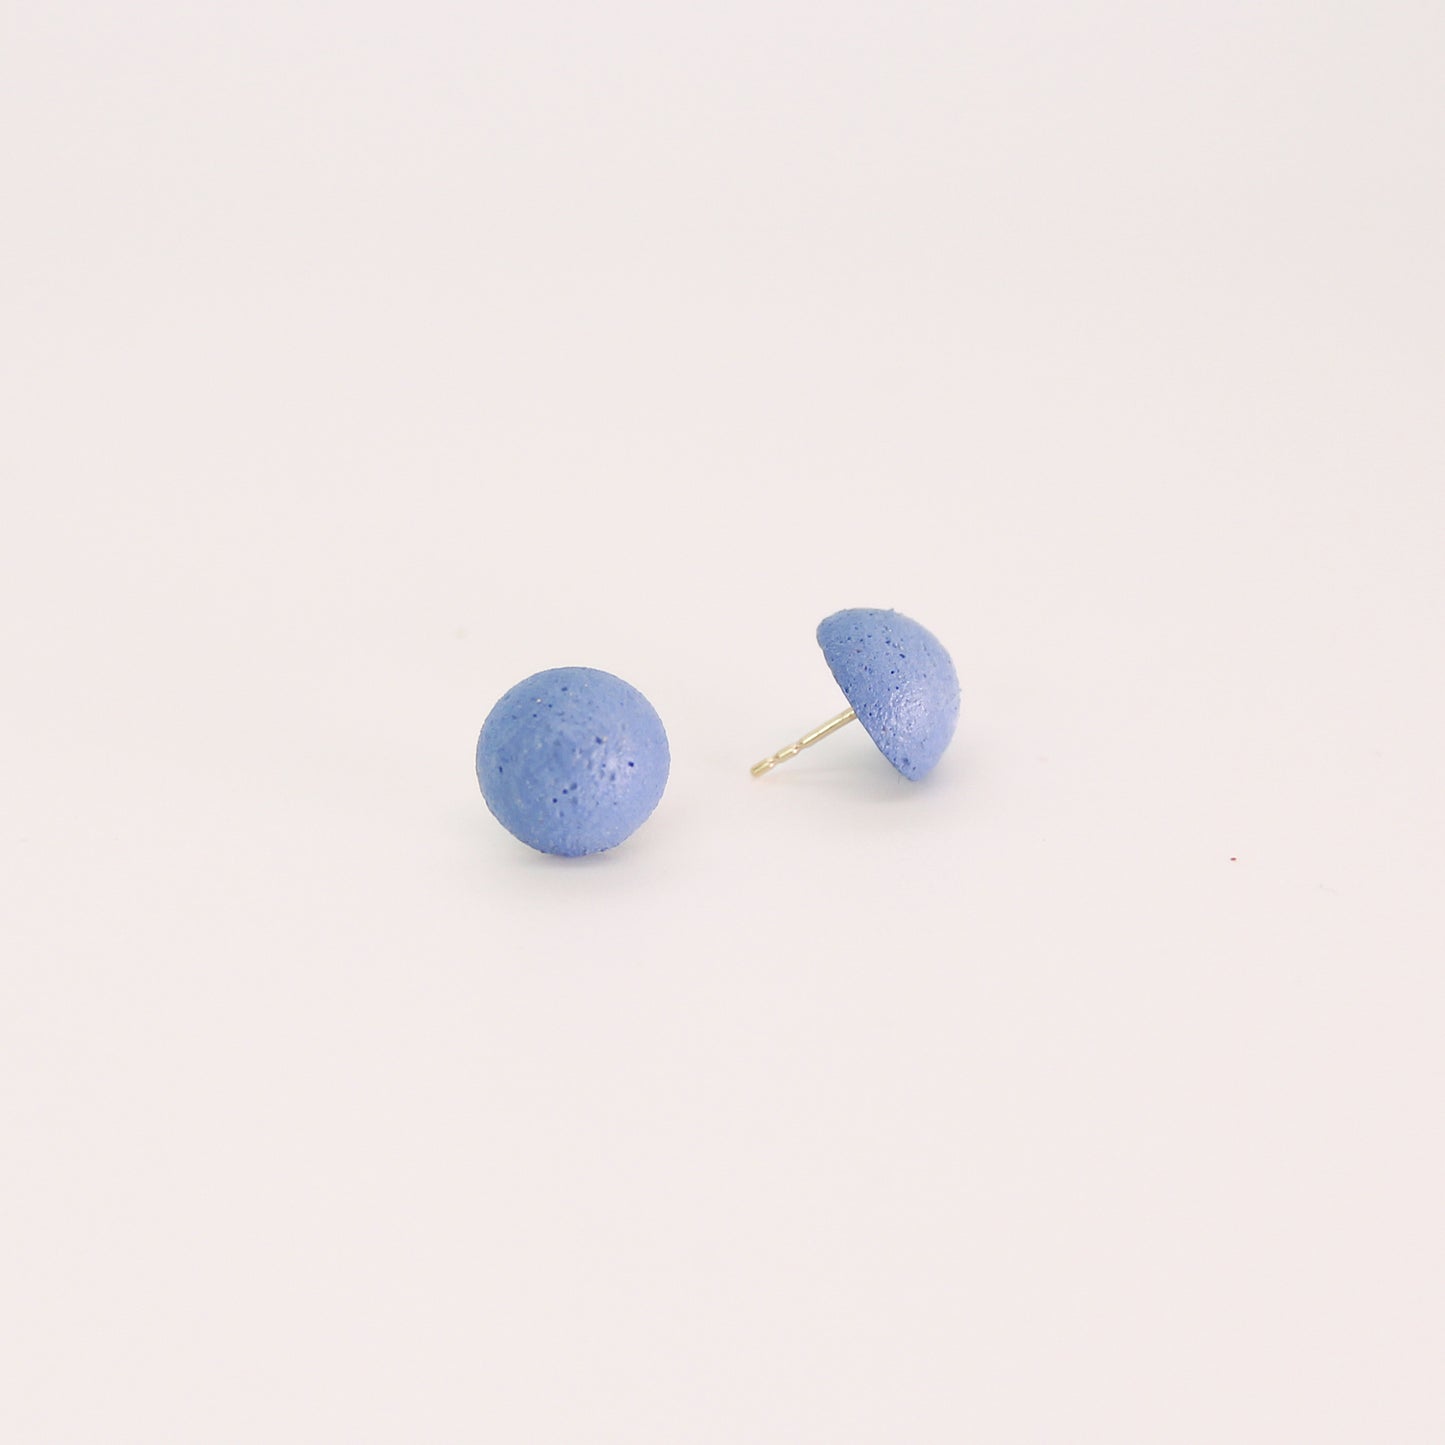 Concrete Sphere Stud Earrings - Blue